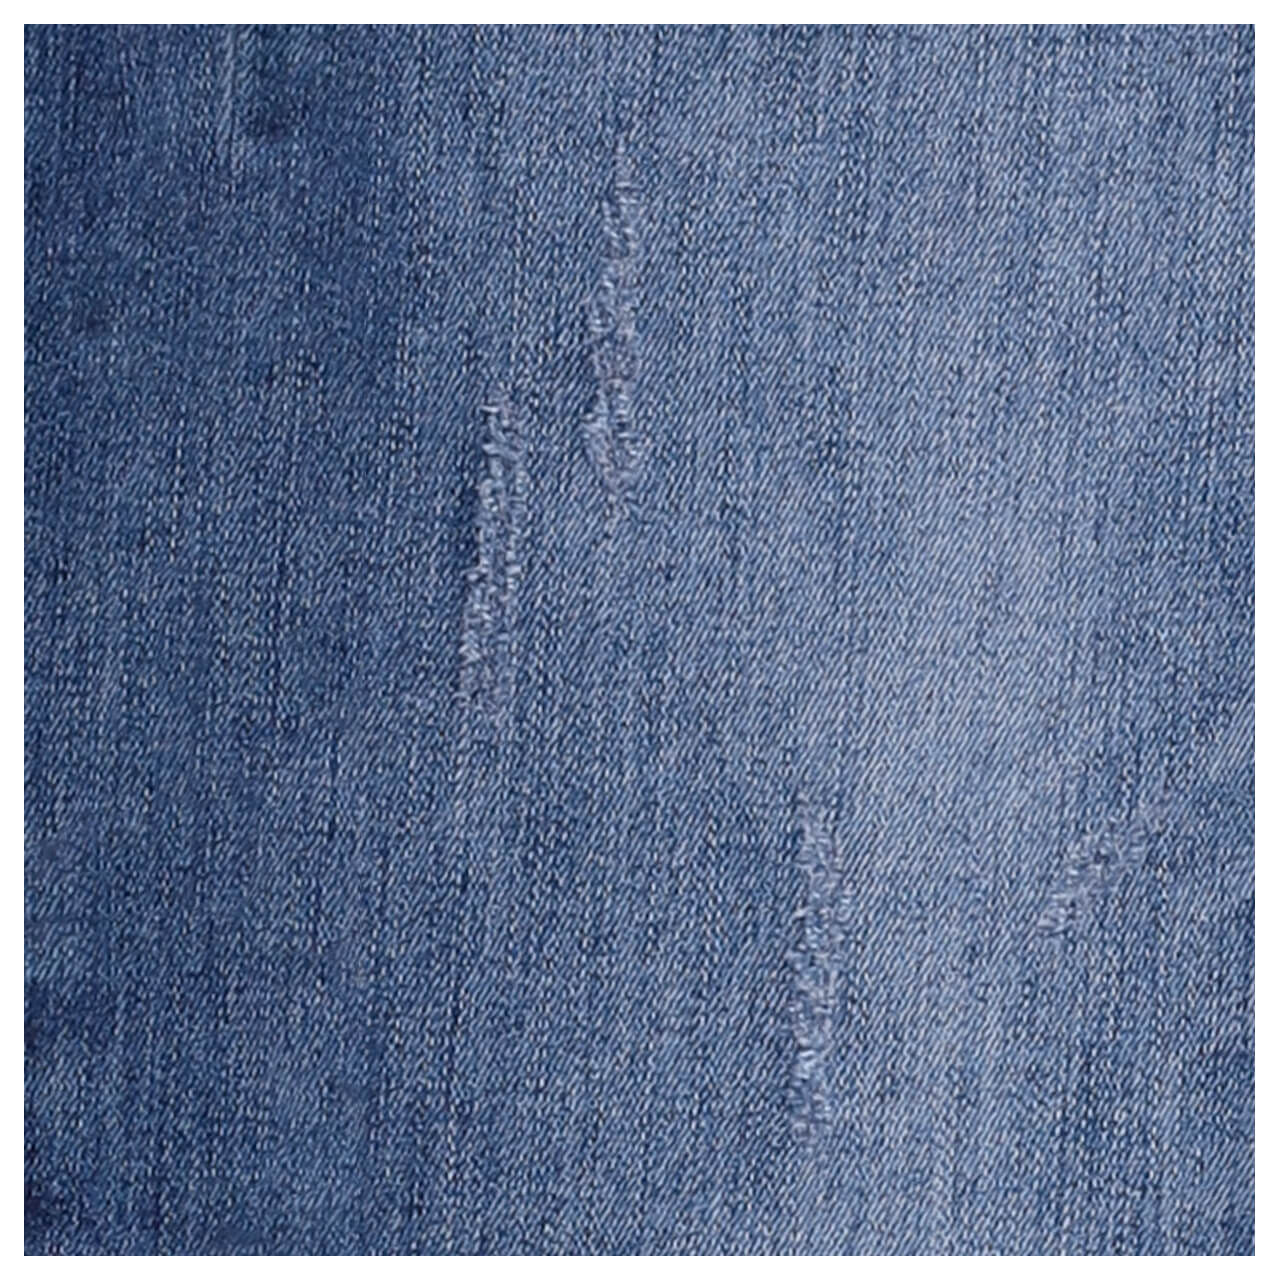 Buena Vista Jeans Italy 7/8 Cozy Denim vintage blue